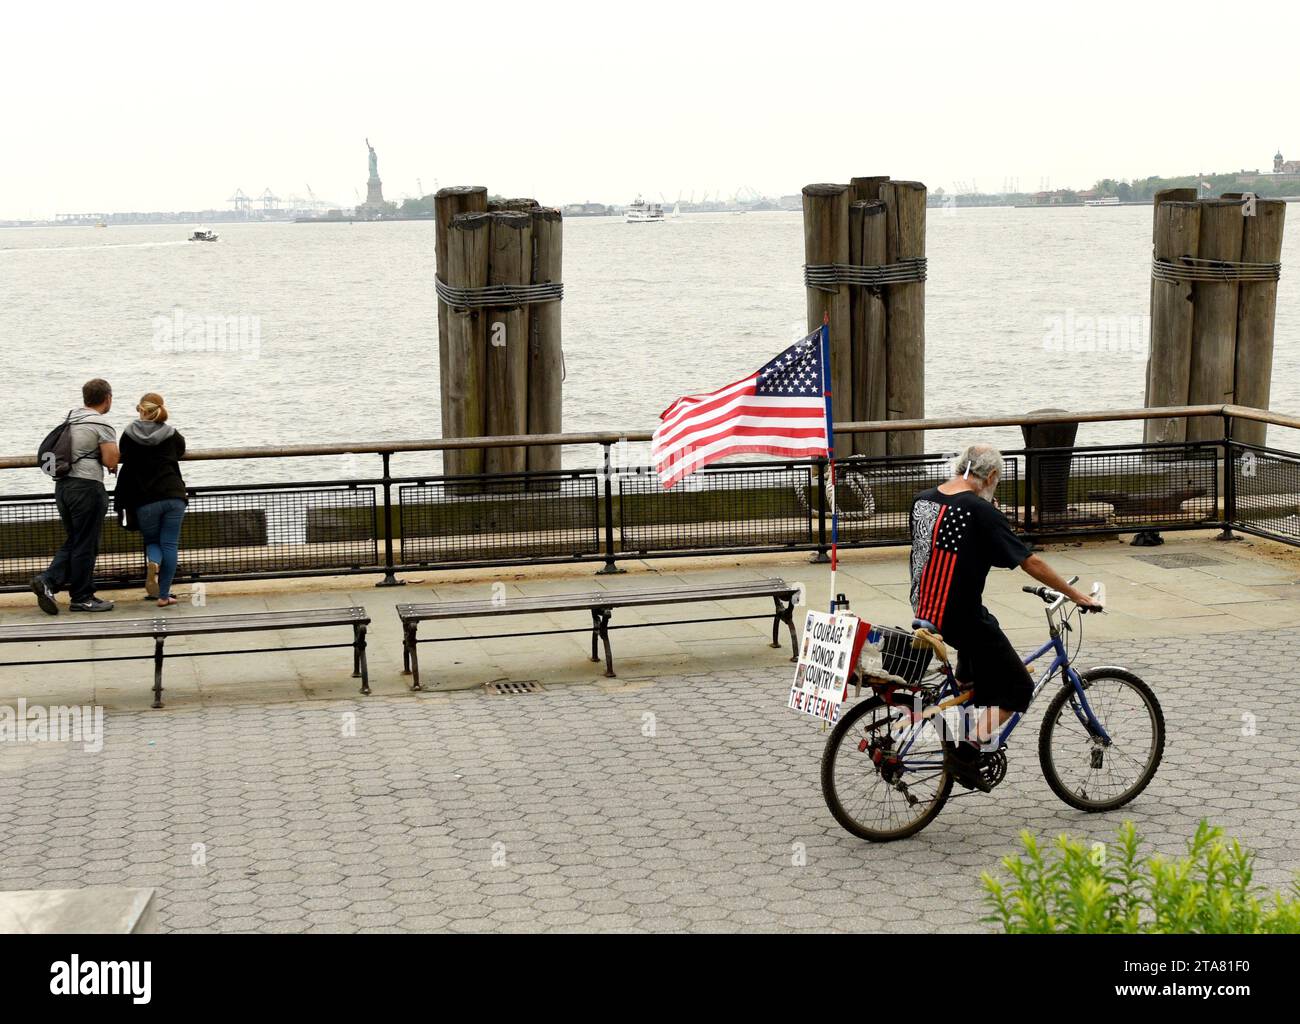 New York, USA - 28. Mai 2018: Ein Mann mit US-Flagge auf einem Fahrrad im Battery Park in New York. Stockfoto